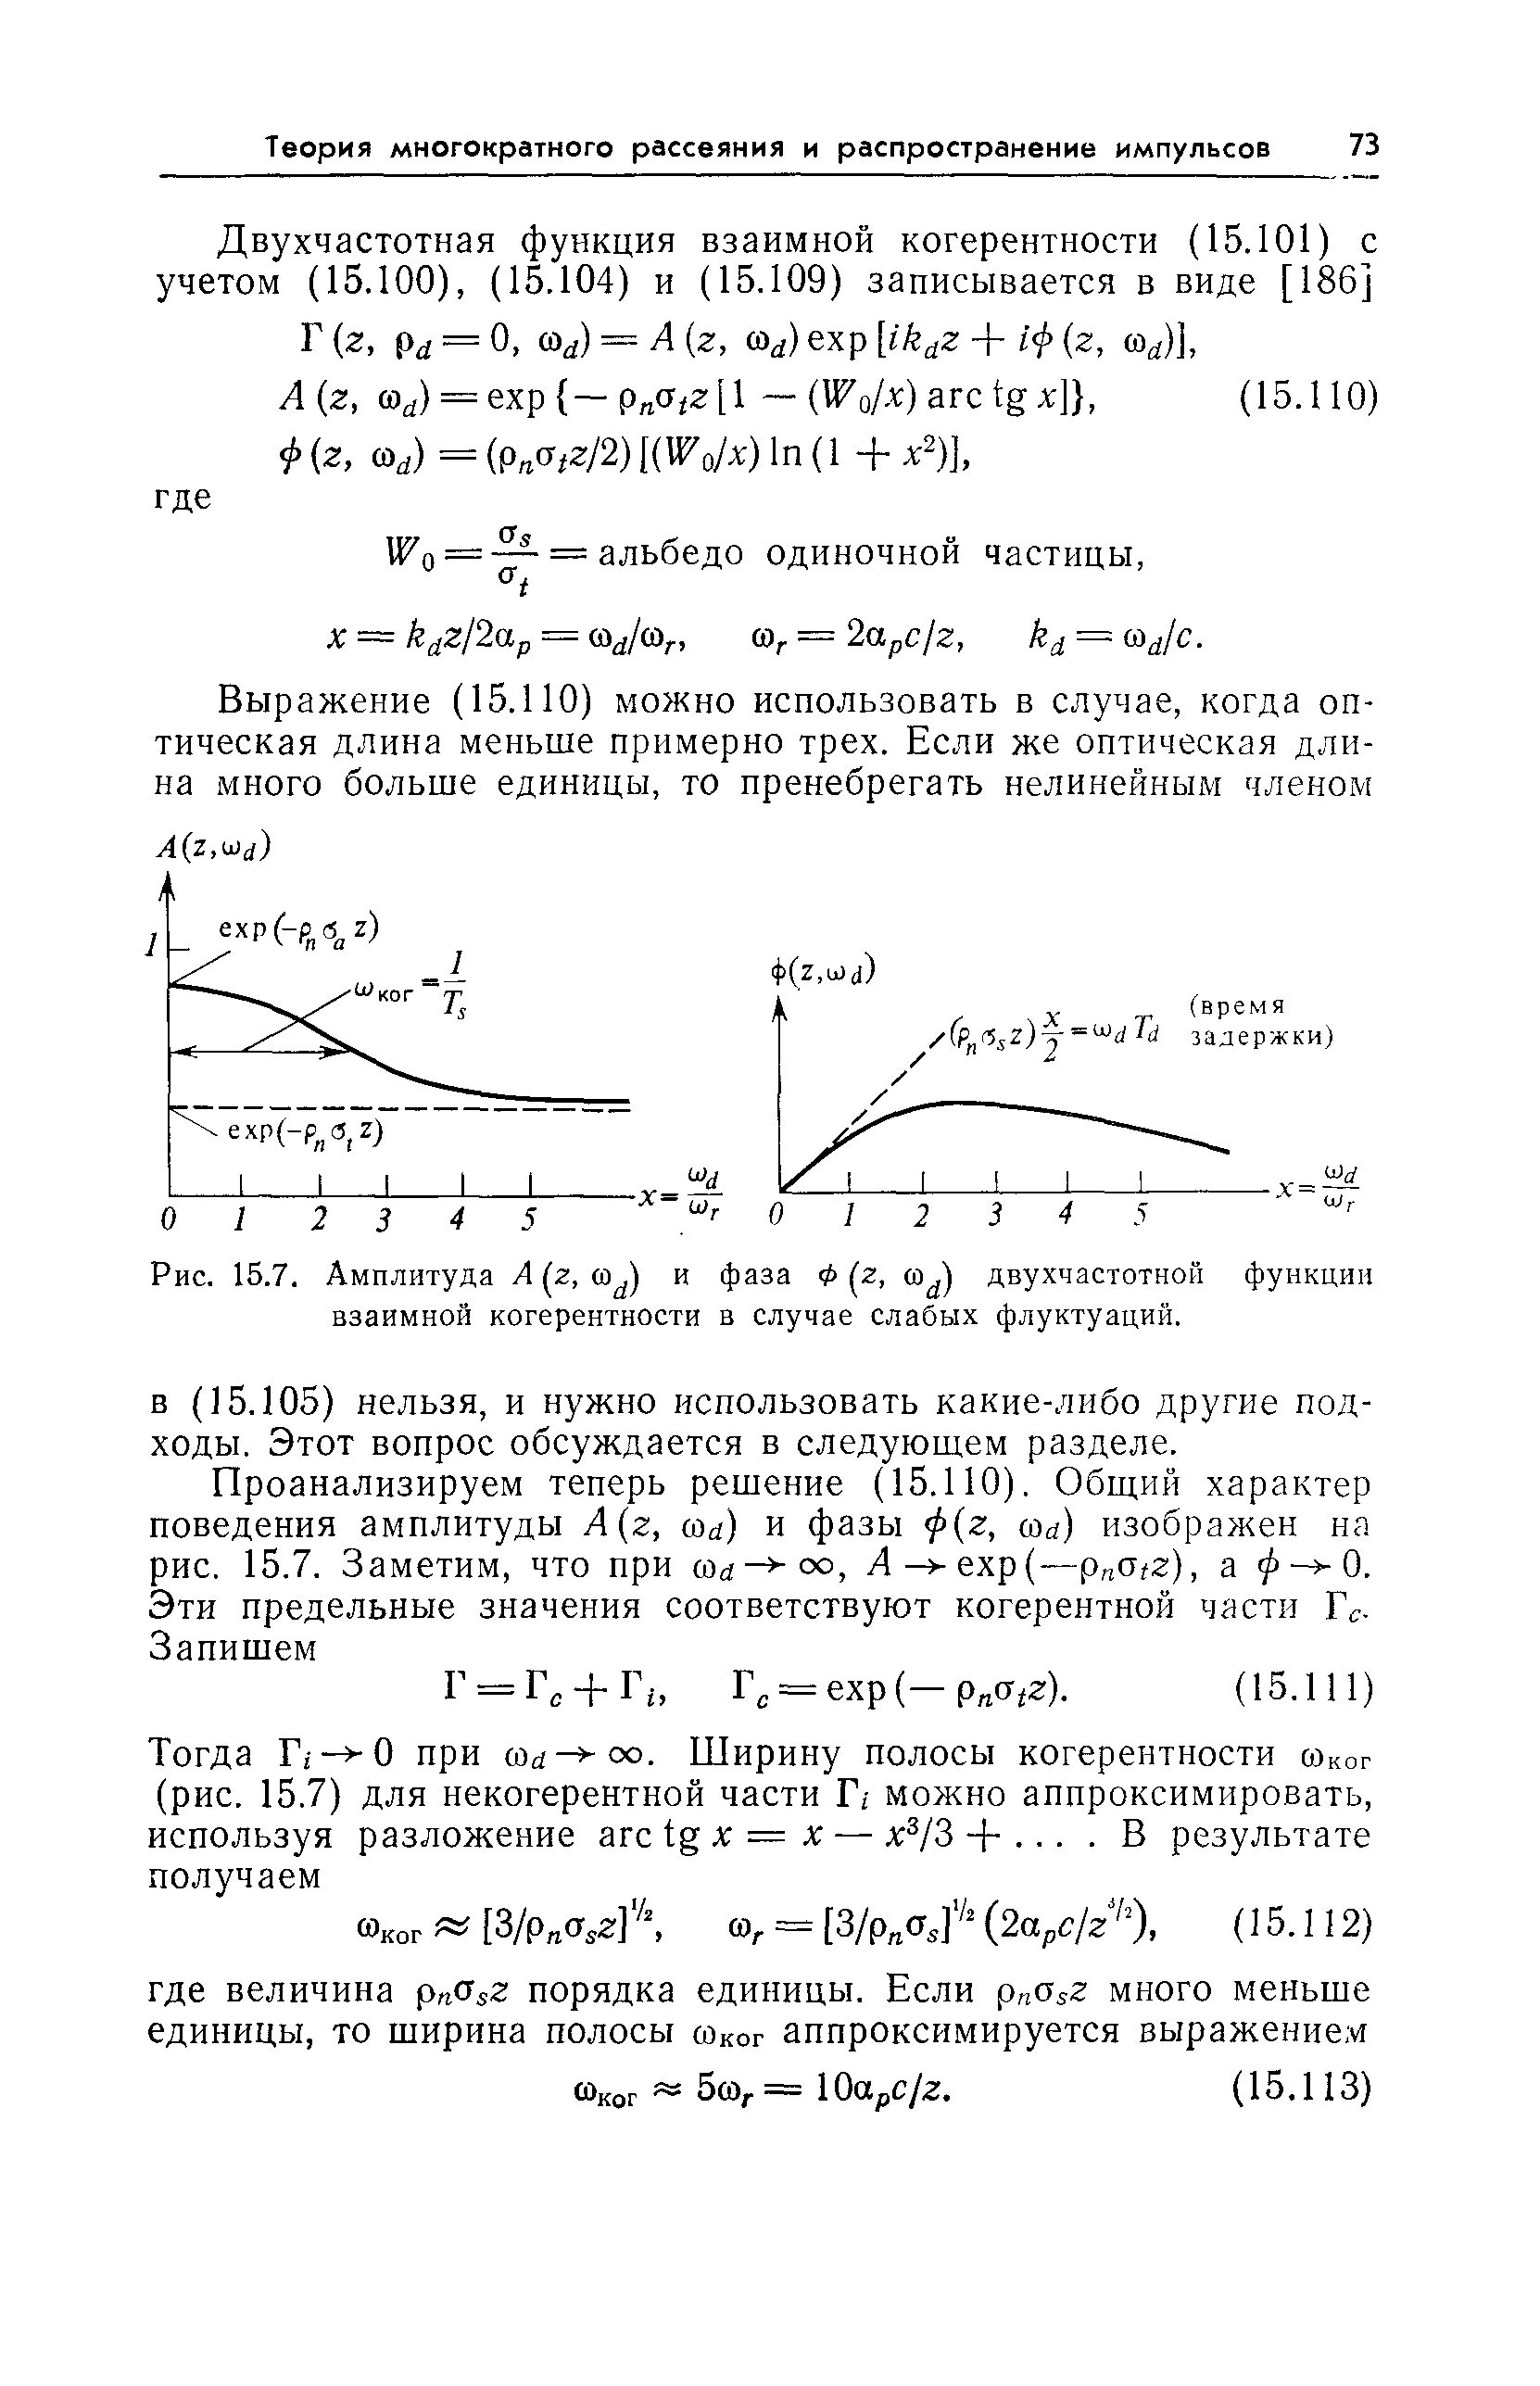 Рис. 15.7. Амплитуда А (z, и ) и фаза Ф (z, двухчастотной функции взаимной когерентности в случае слабых флуктуаций.
